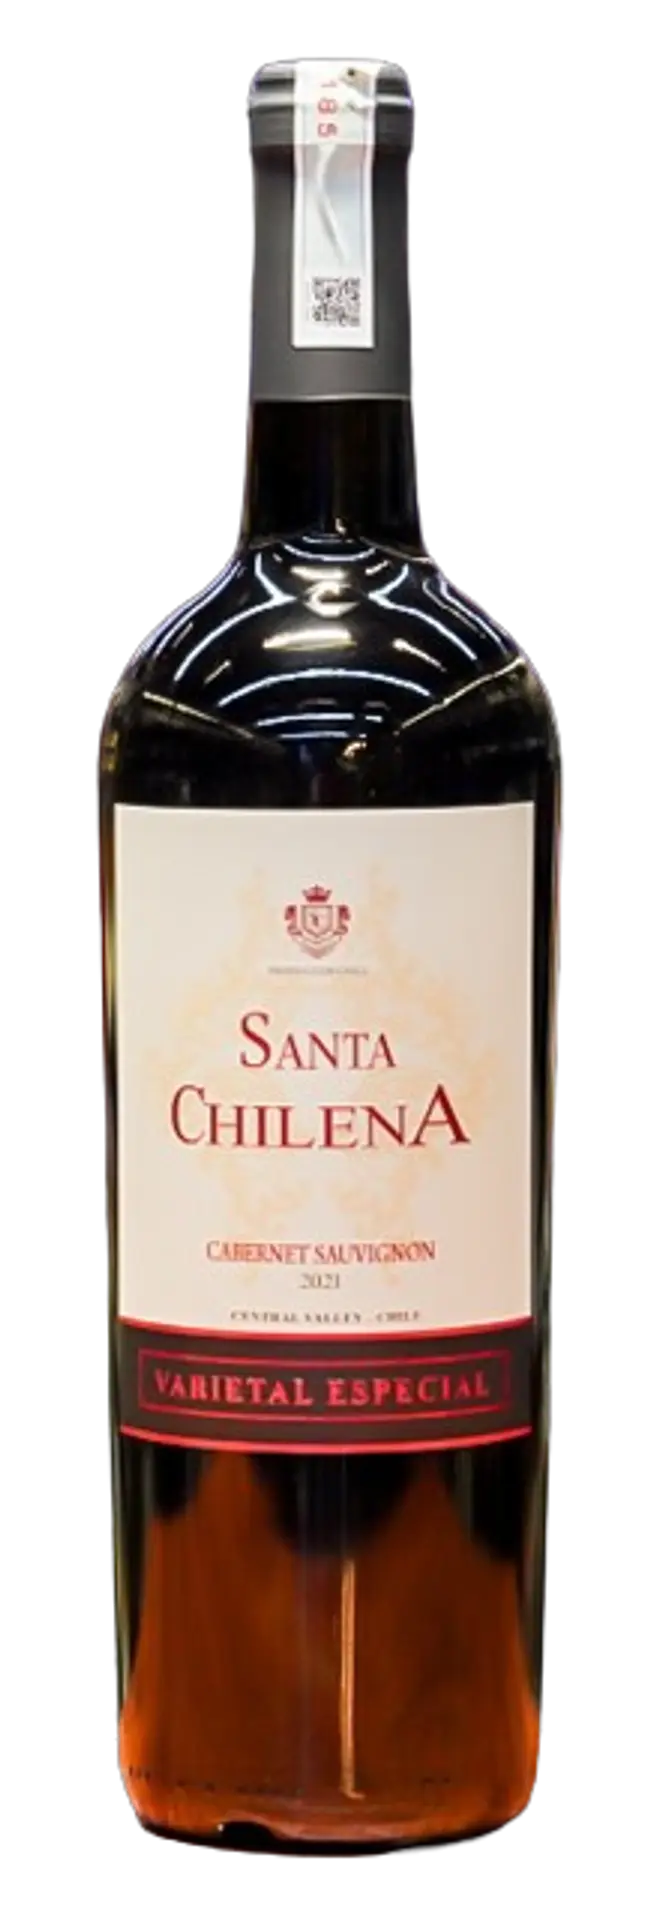 Santa Chilena Cabernet Sauvignon